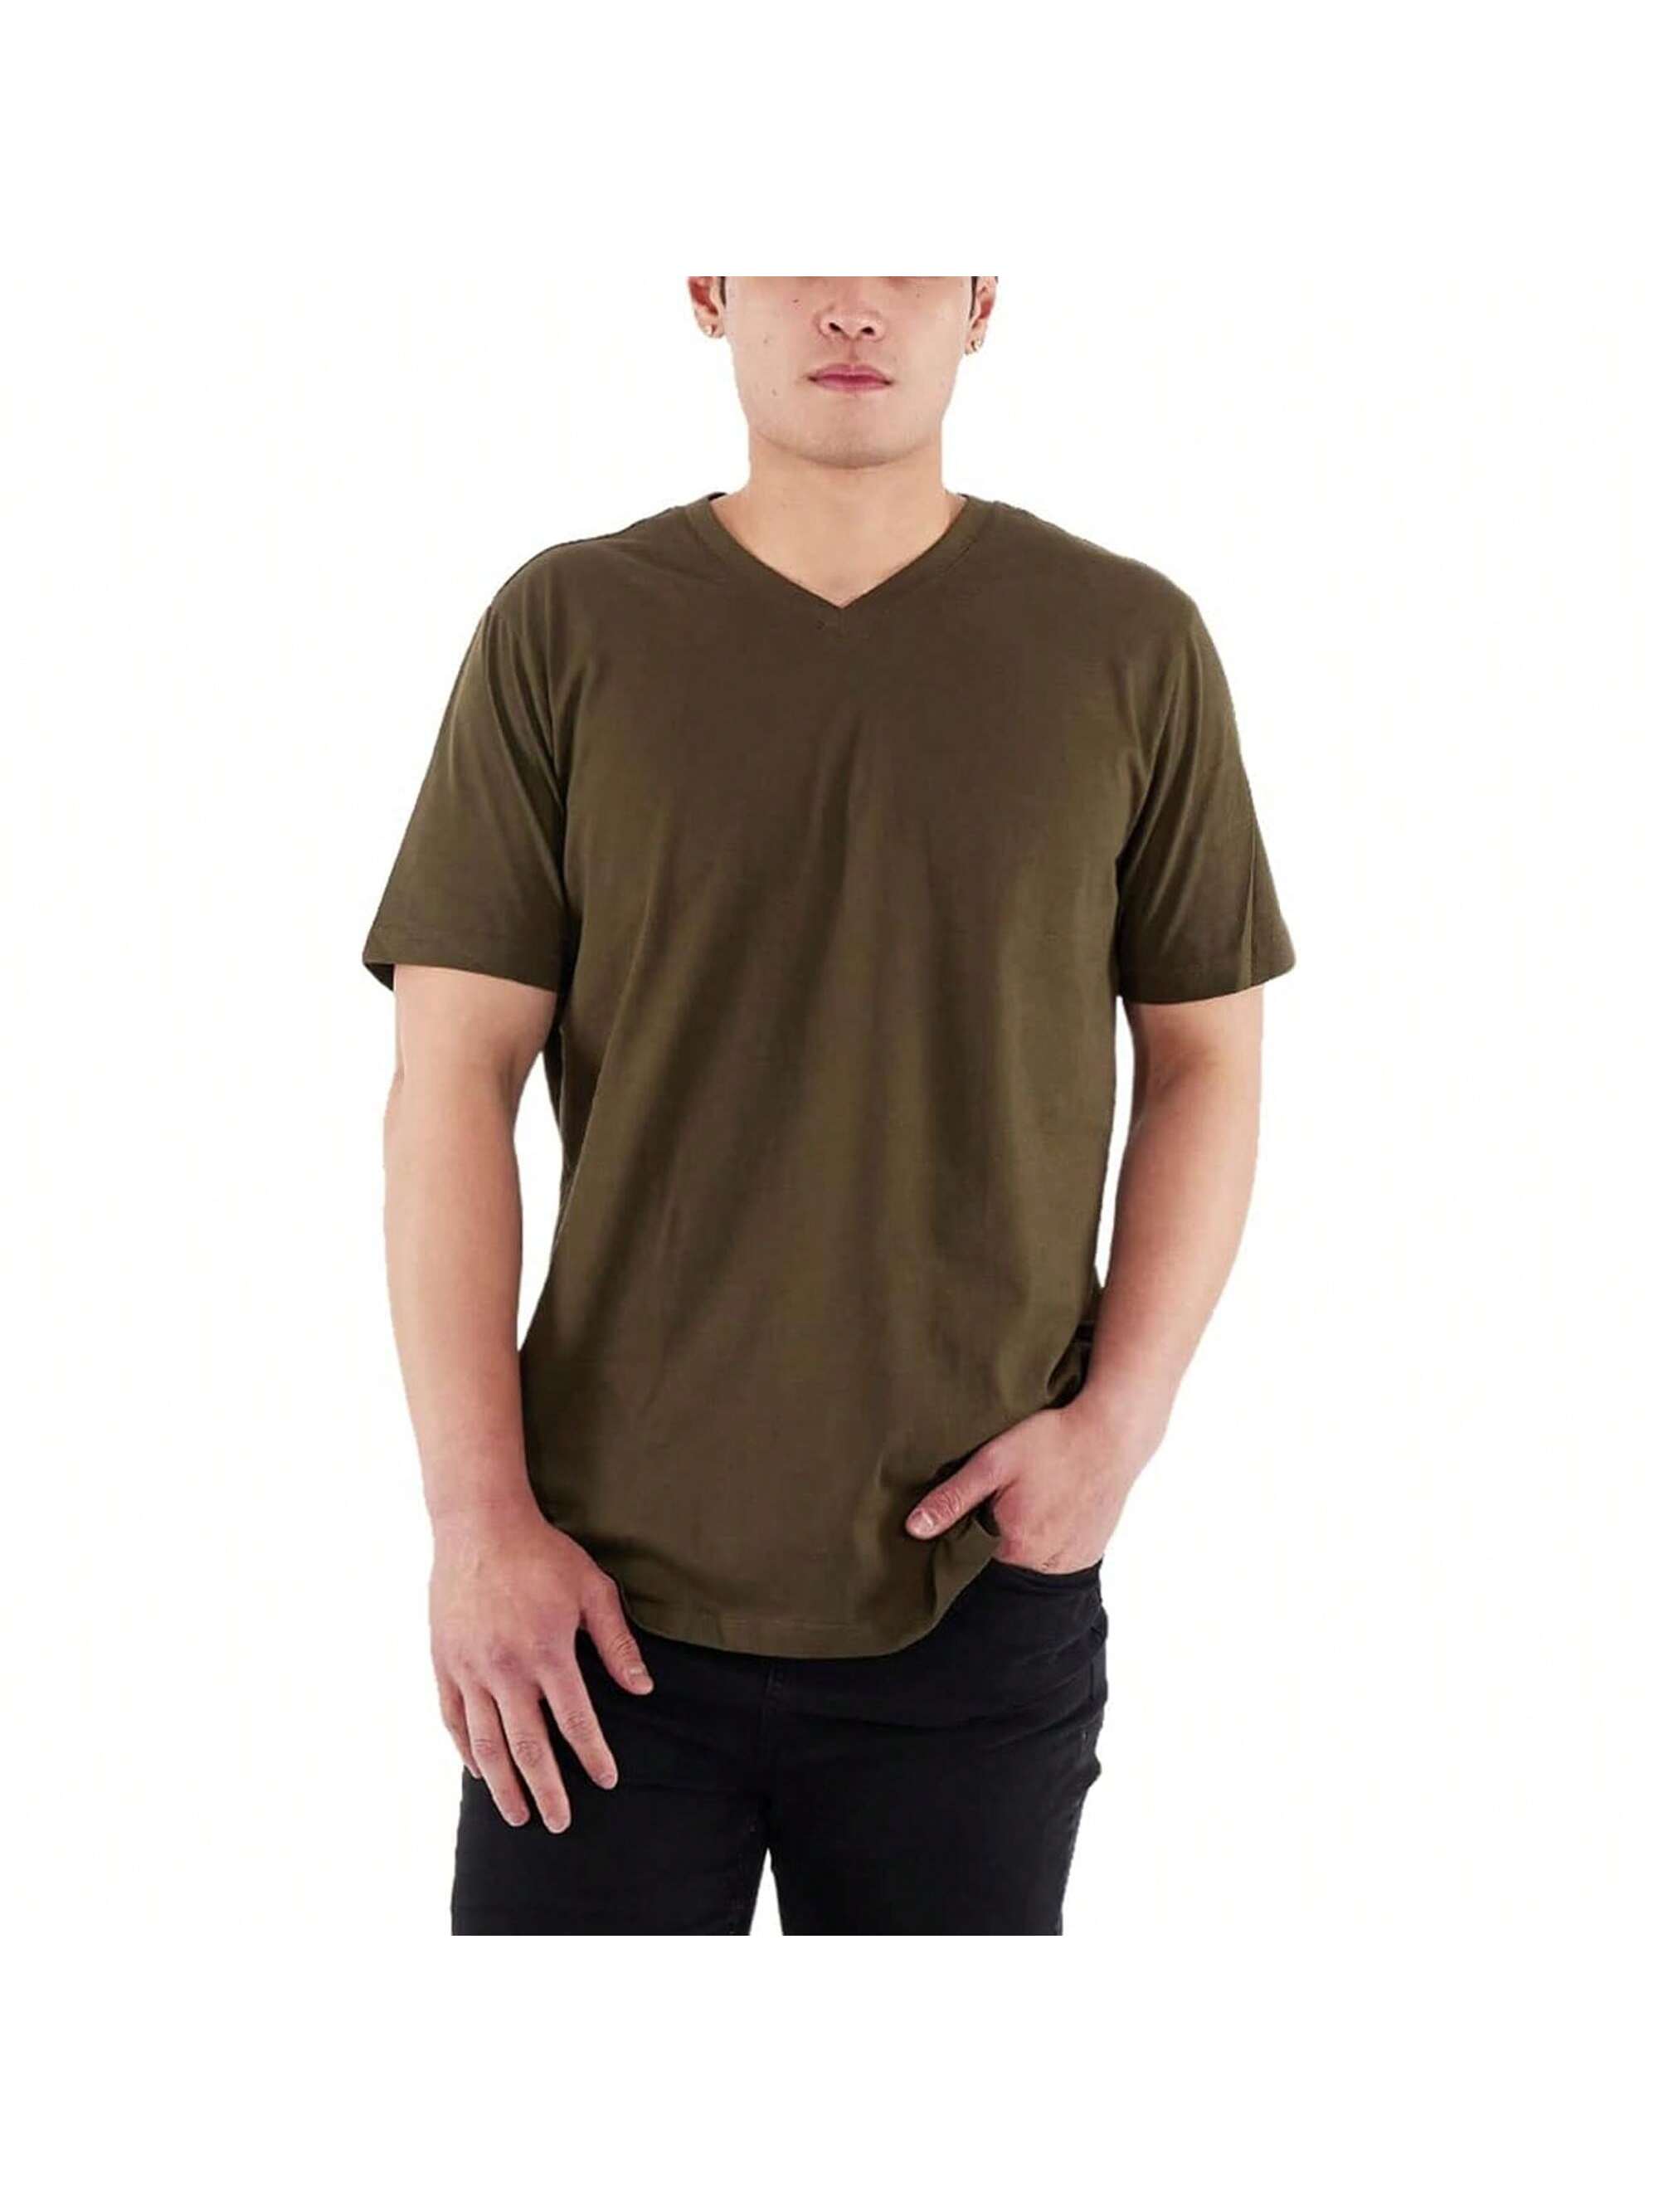 Мужская хлопковая футболка премиум-класса с v-образным вырезом Rich Cotton BLK-M, оливковое перчатки sherwood code v sr blk red 13